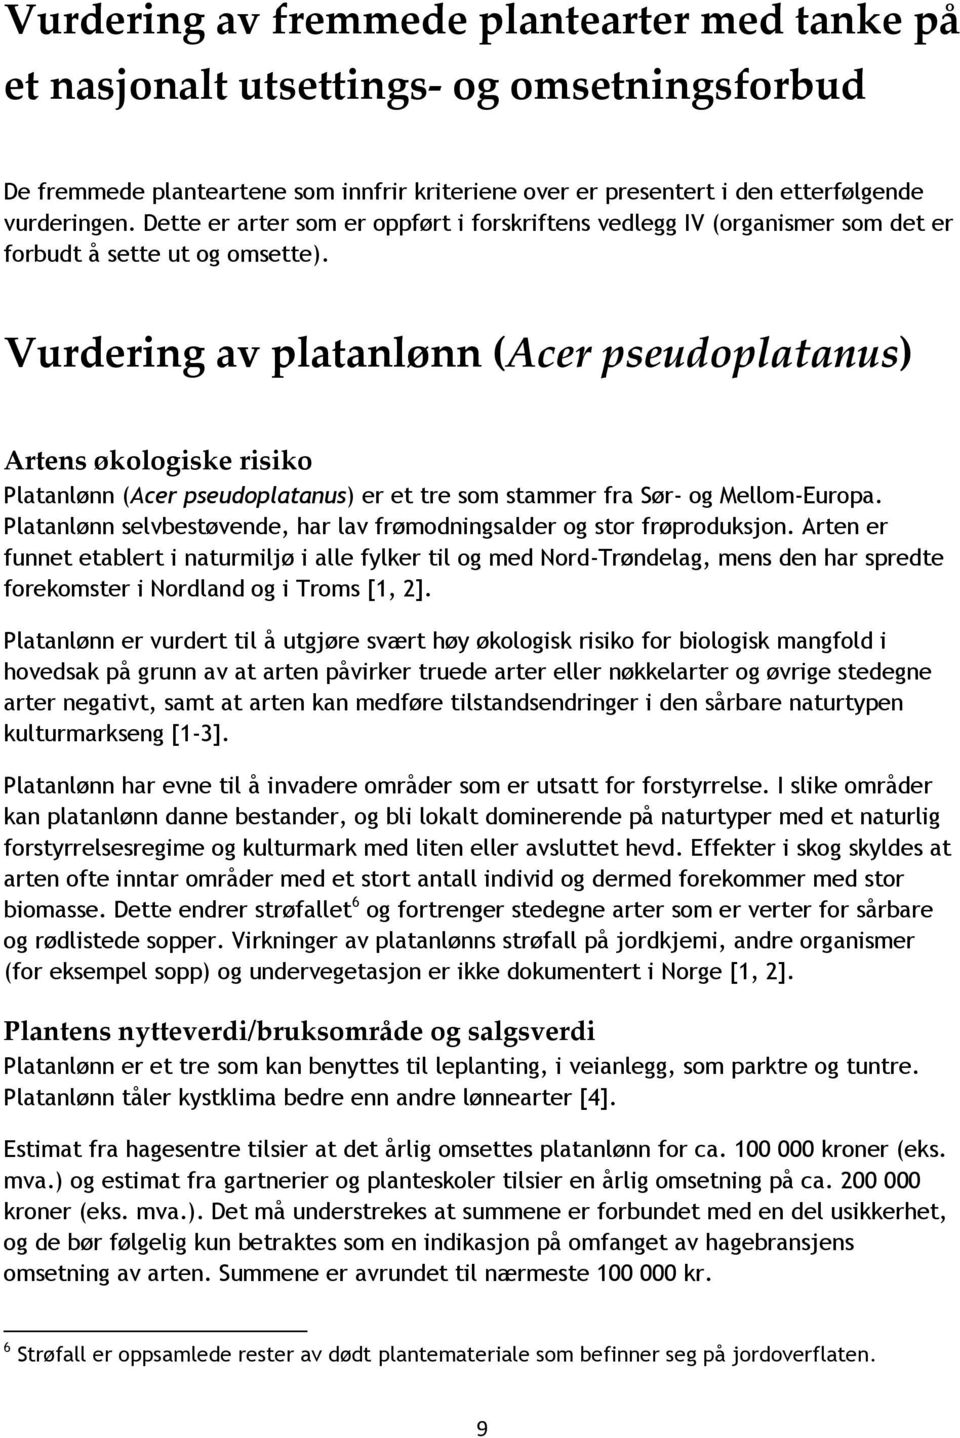 Vurdering av platanlønn (Acer pseudoplatanus) Platanlønn (Acer pseudoplatanus) er et tre som stammer fra Sør- og Mellom-Europa.